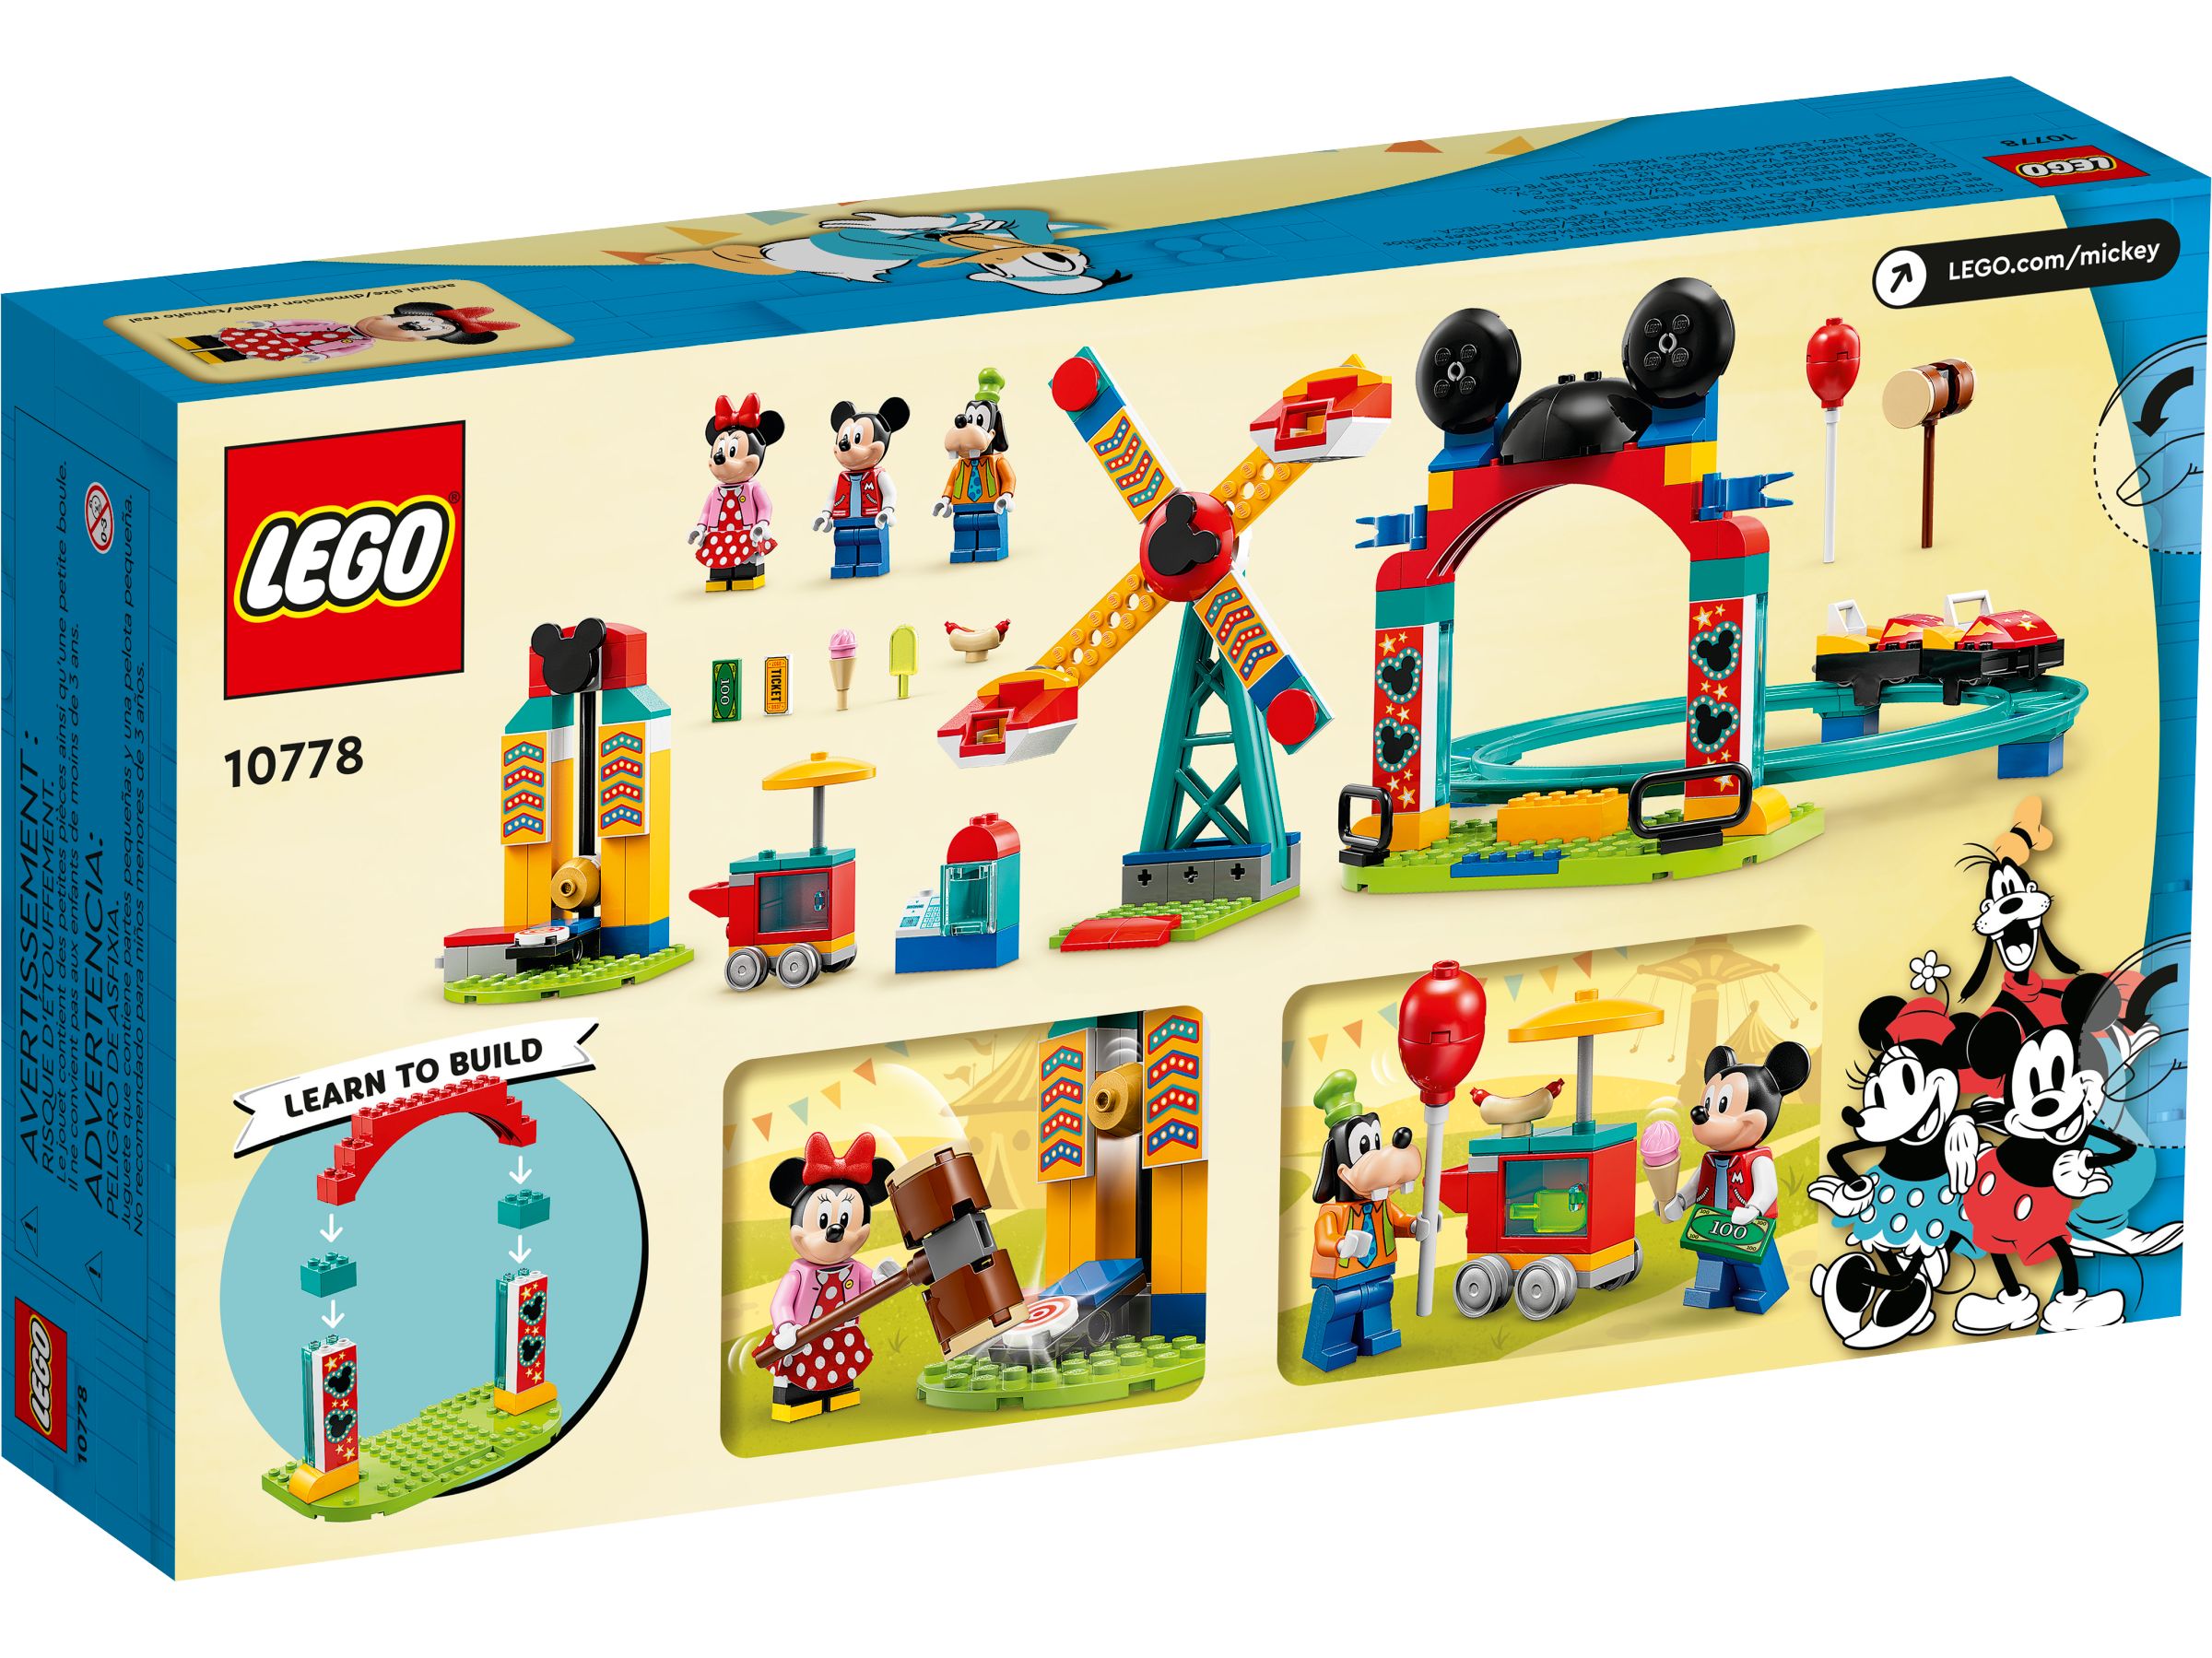 LEGO Disney 10778 Micky, Minnie und Goofy auf dem Jahrmarkt LEGO_10778_alt6.jpg